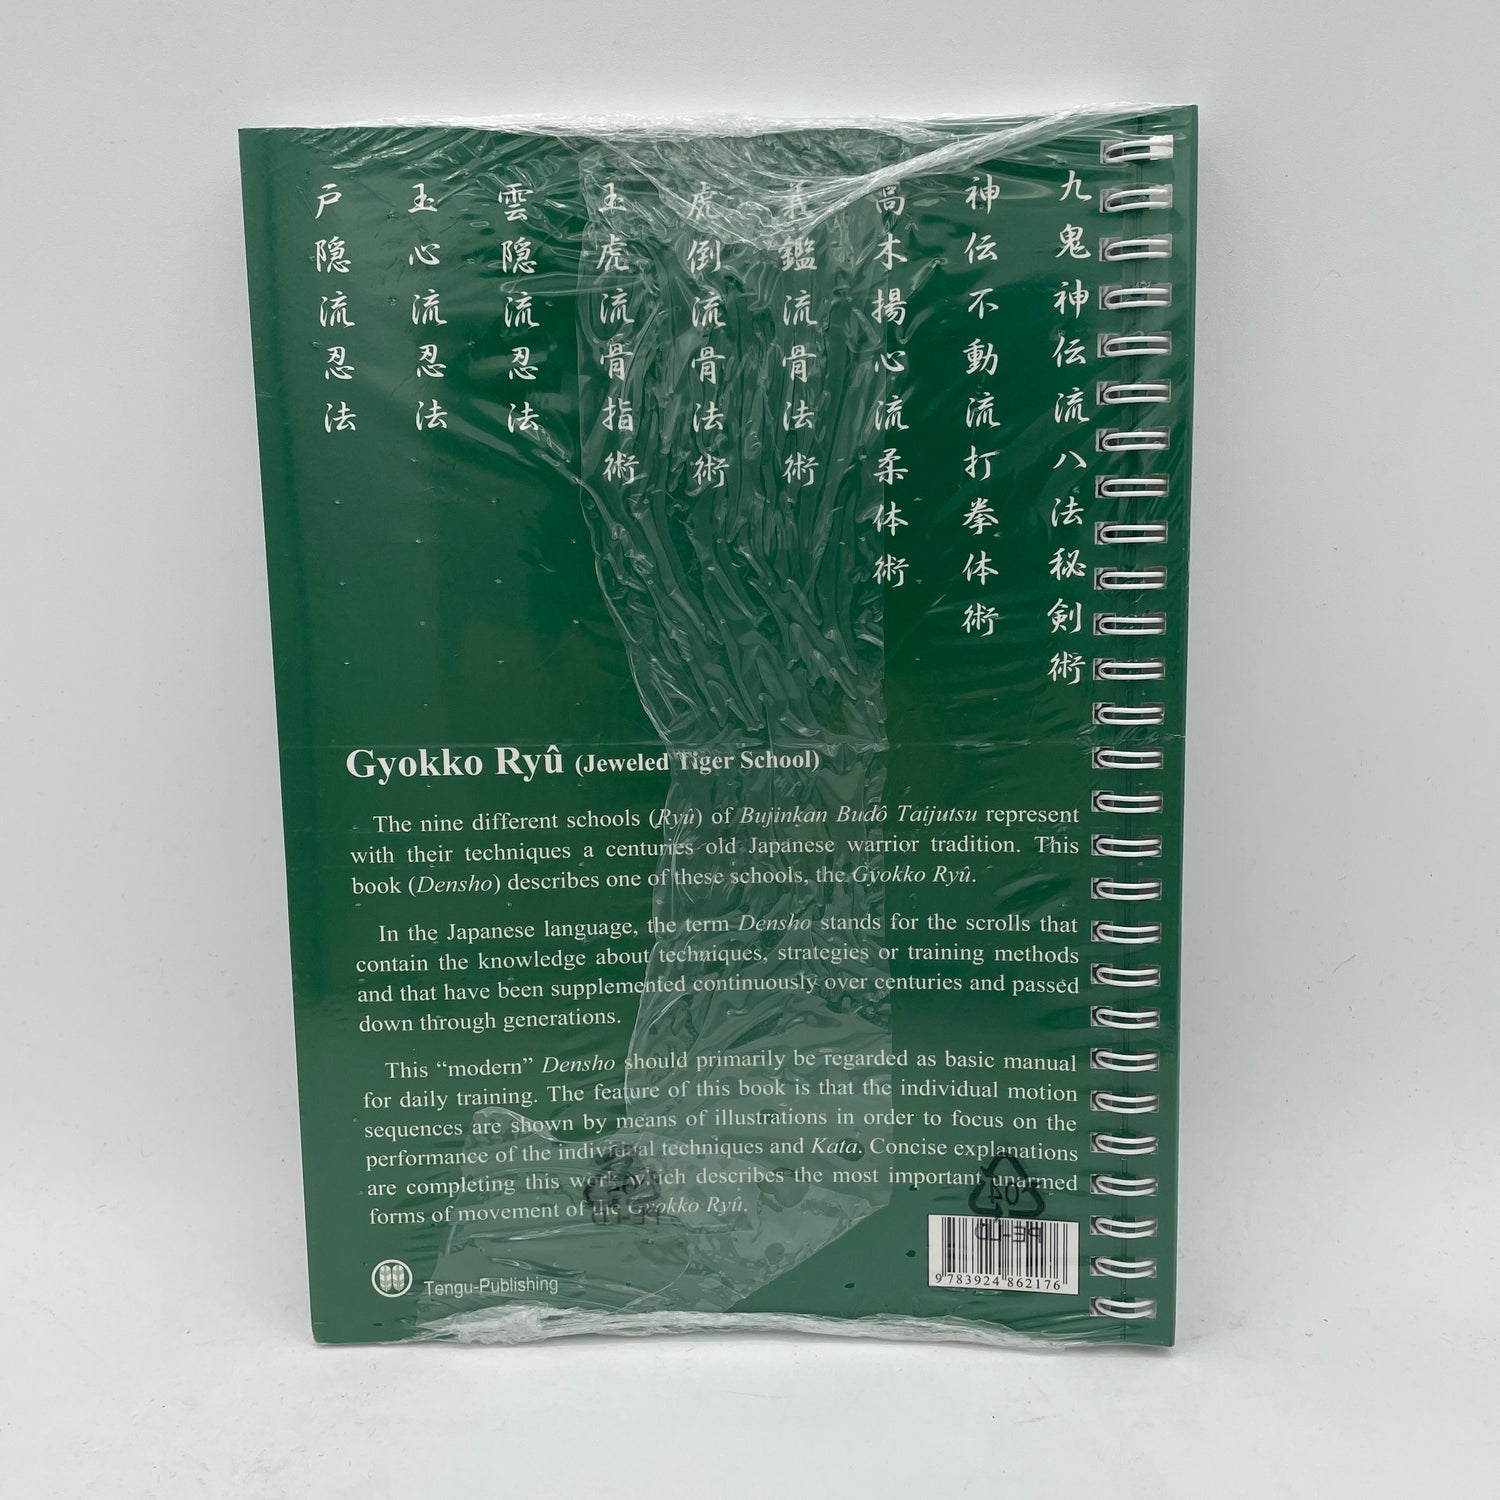 Bujinkan Budo Densho Libro 1: Gyokko Ryu de Carsten Kuhn